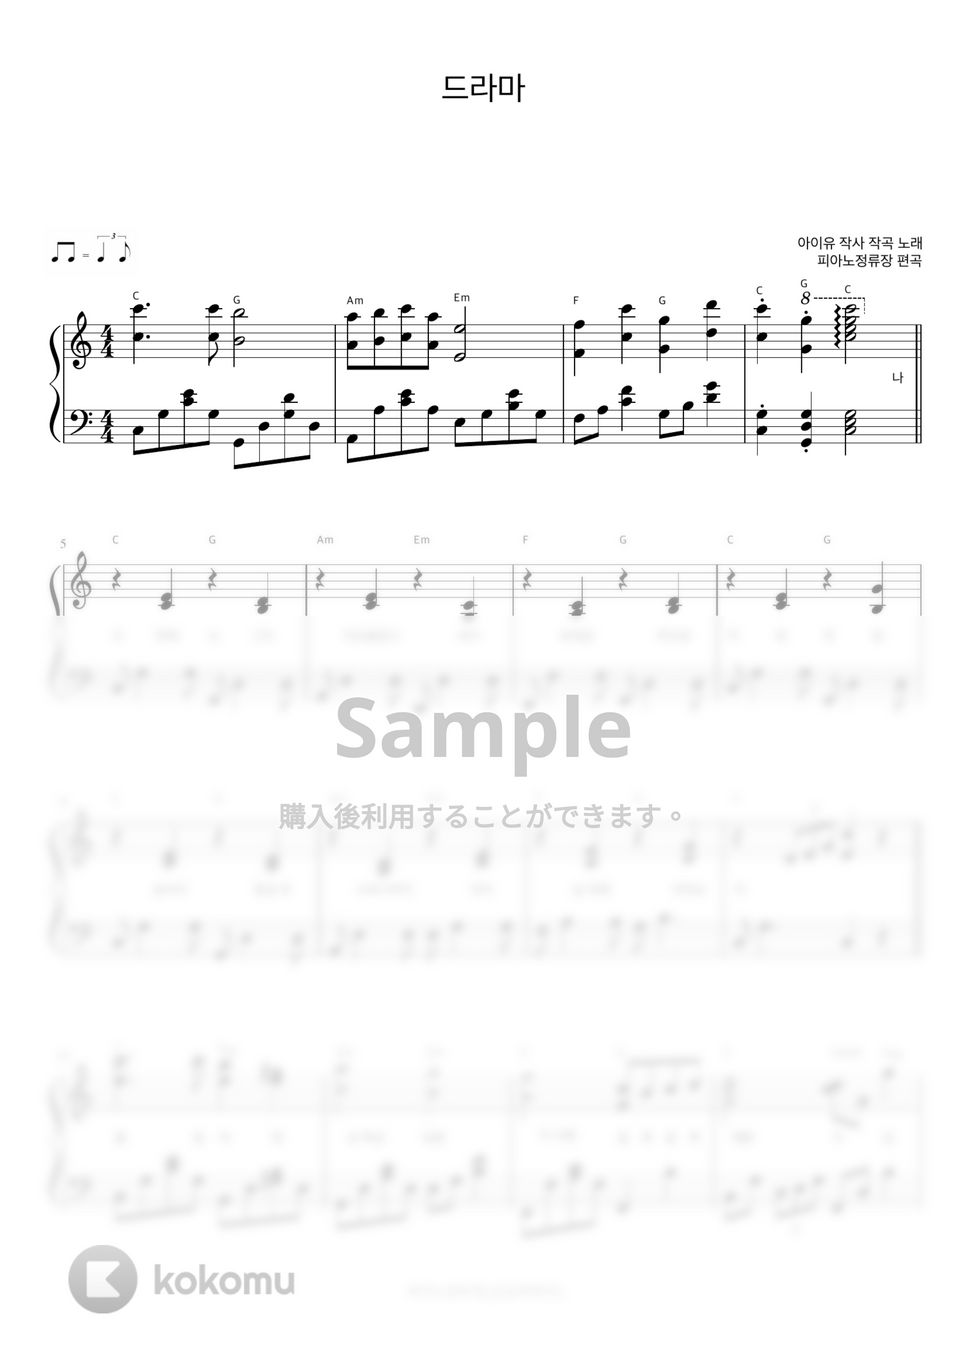 IU - Drama (伴奏楽譜) by 피아노정류장